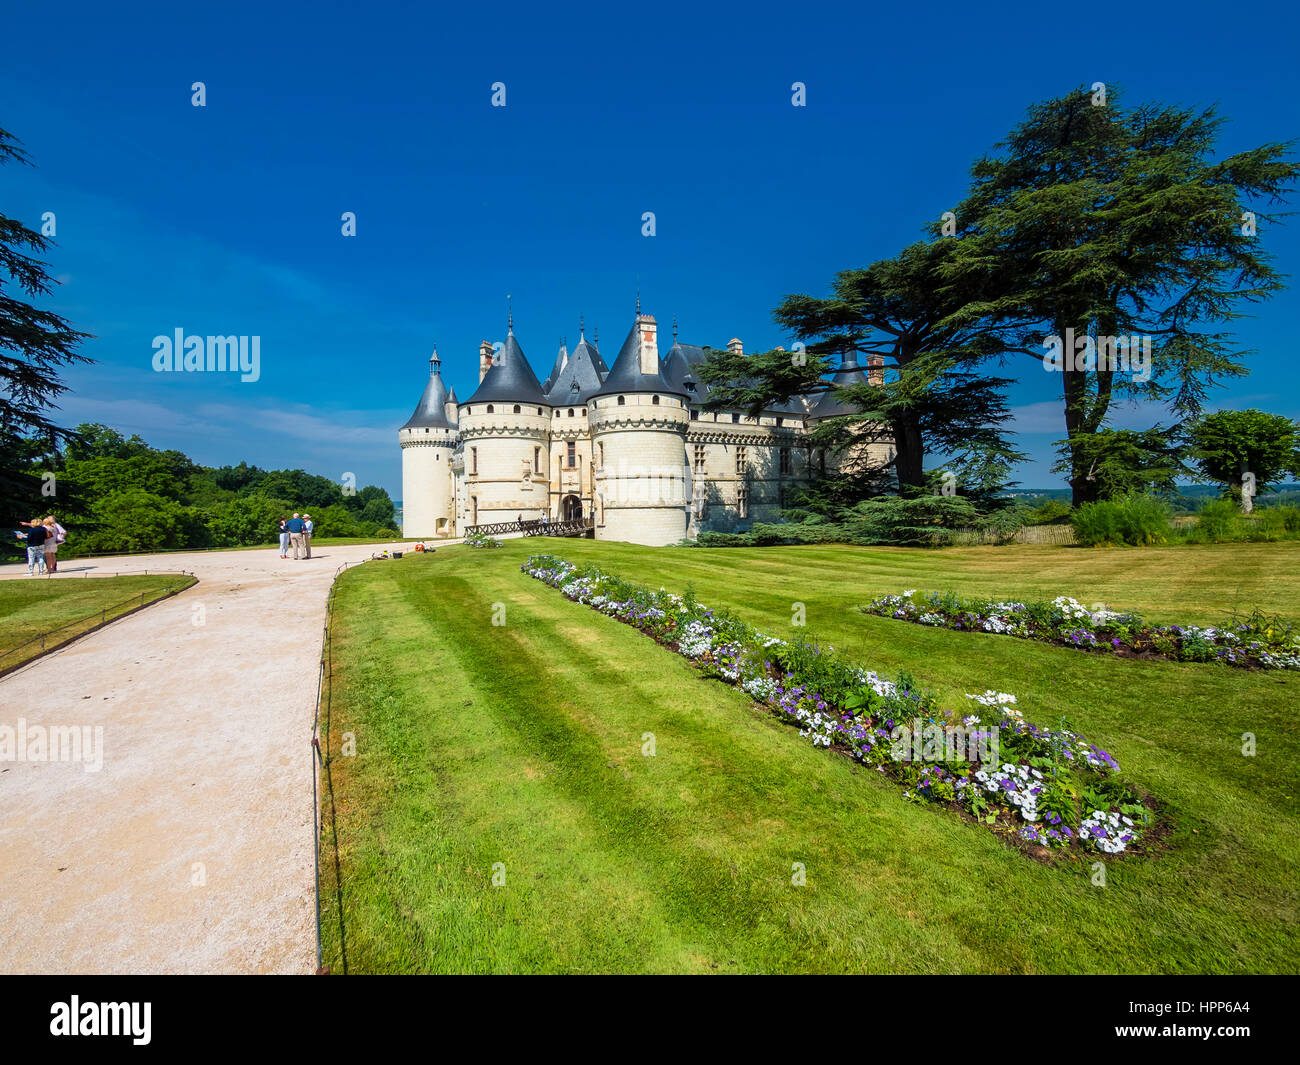 Chaumont castle, Chateau de Chaumont, with parkland, Chaumont-sur-Loire, Department Loir-et-Cher, France Stock Photo